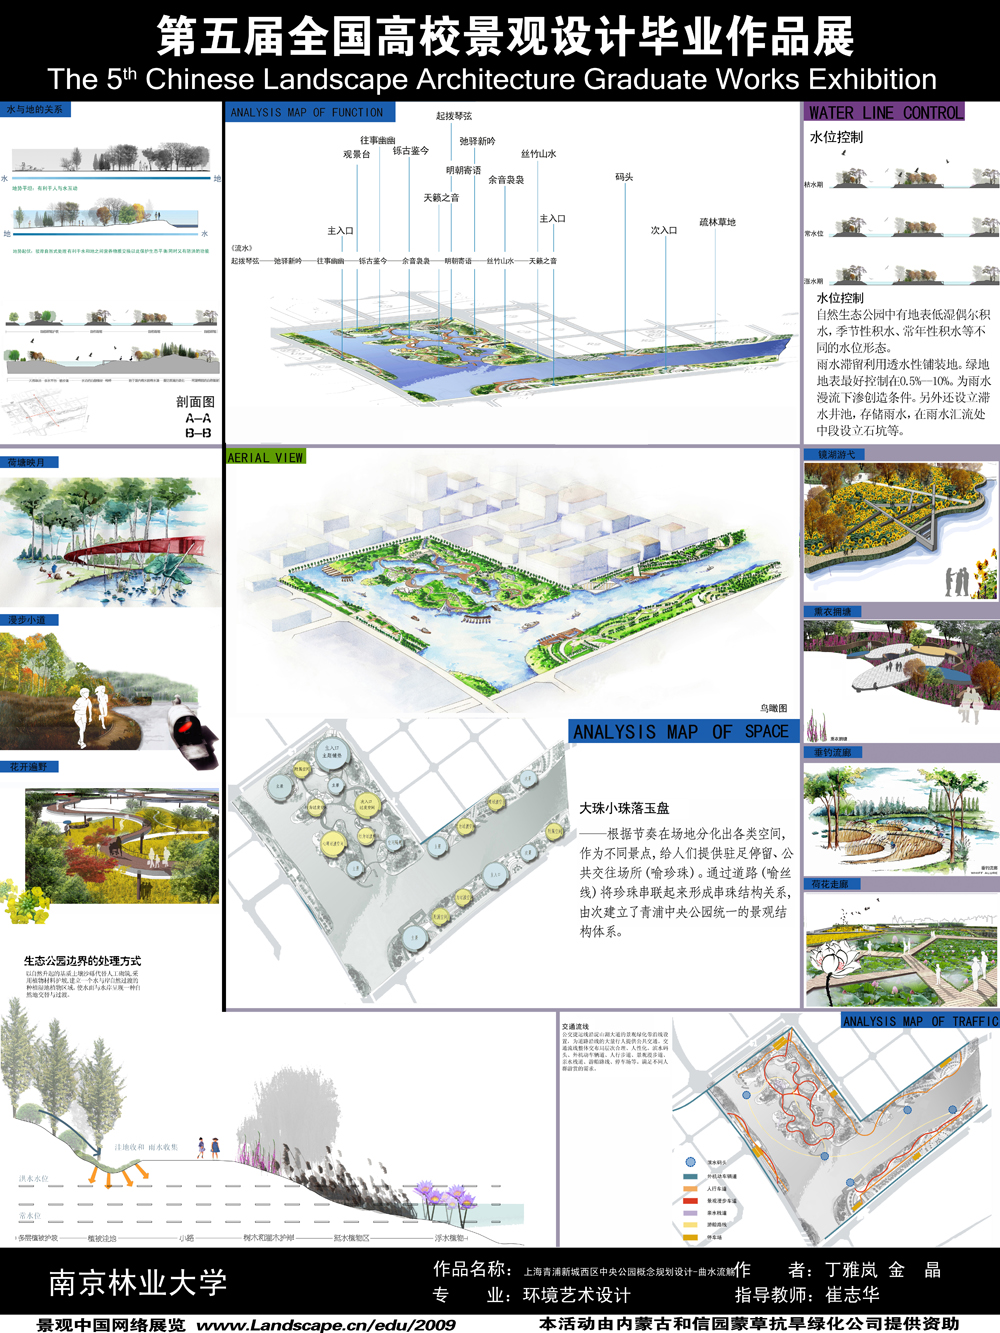 上海青浦新城西区中央公园概念规划设计--曲水流觞-2